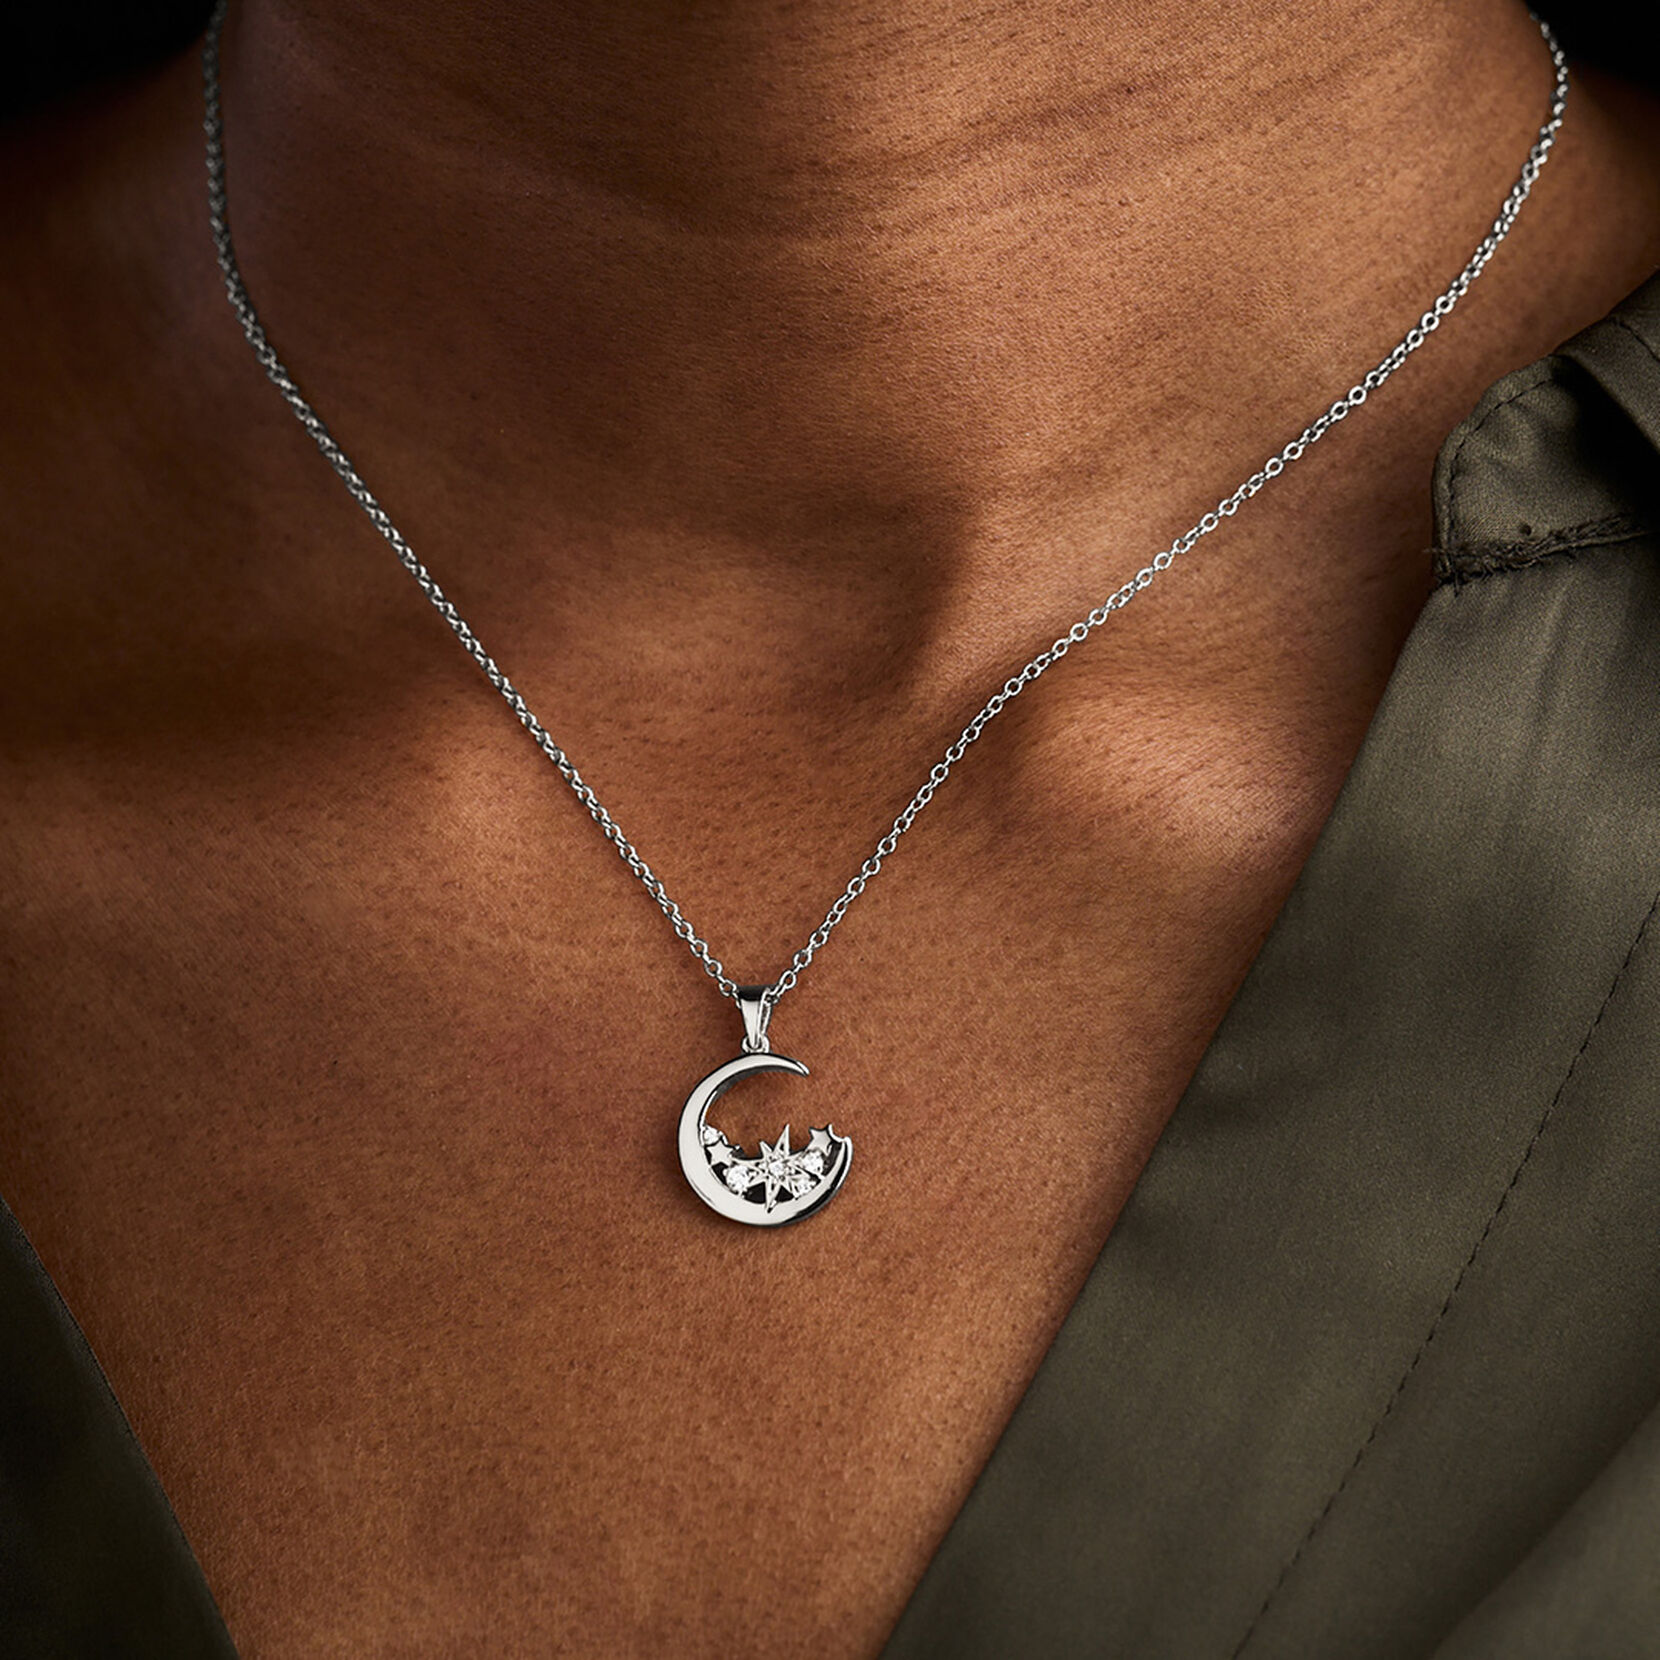 Celestial Silver Moon Necklace